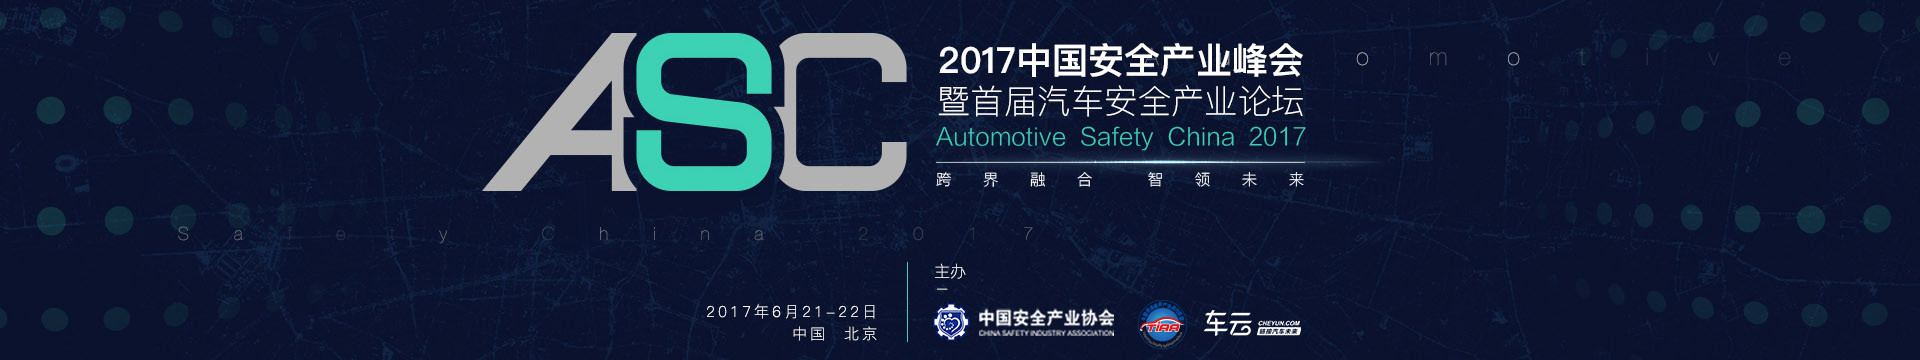 2017中国安全产业峰会暨首届汽车安全产业论坛